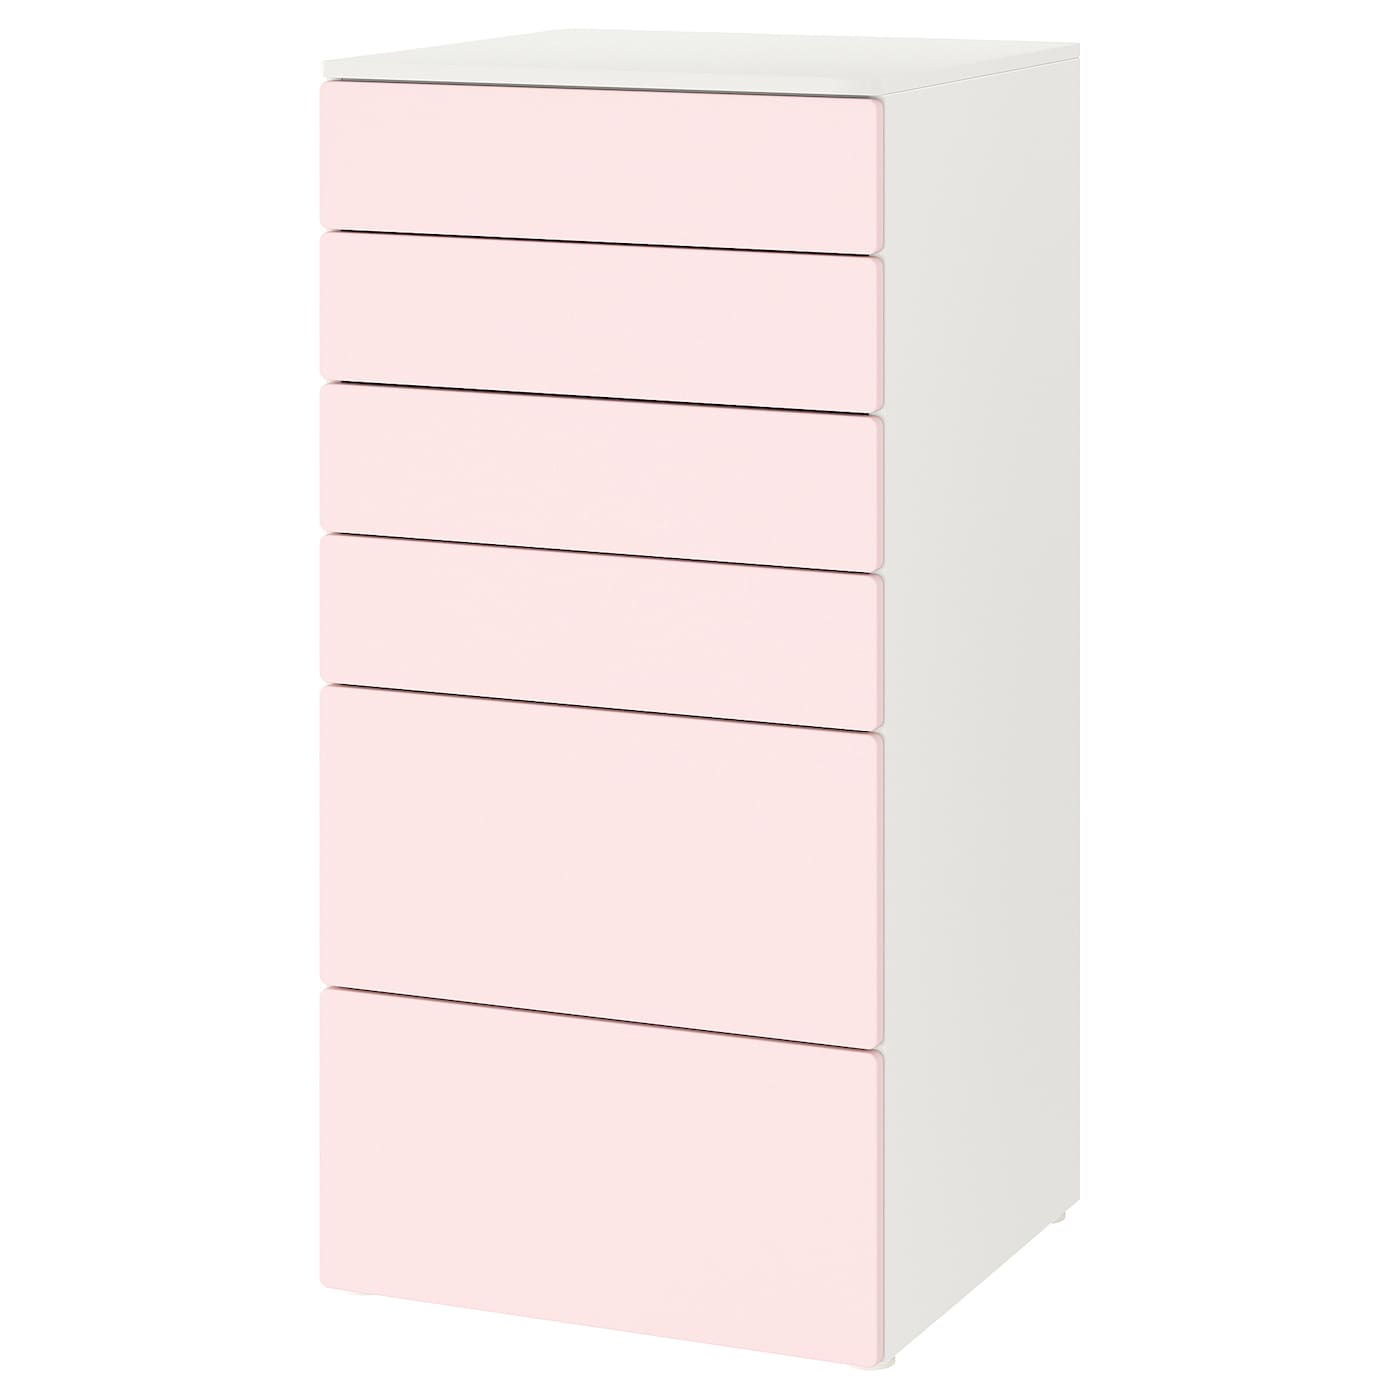 Комод детский - IKEA PLATSA/SMÅSTAD/SMASTAD, 60x55x123 см, белый/розовый, ИКЕА